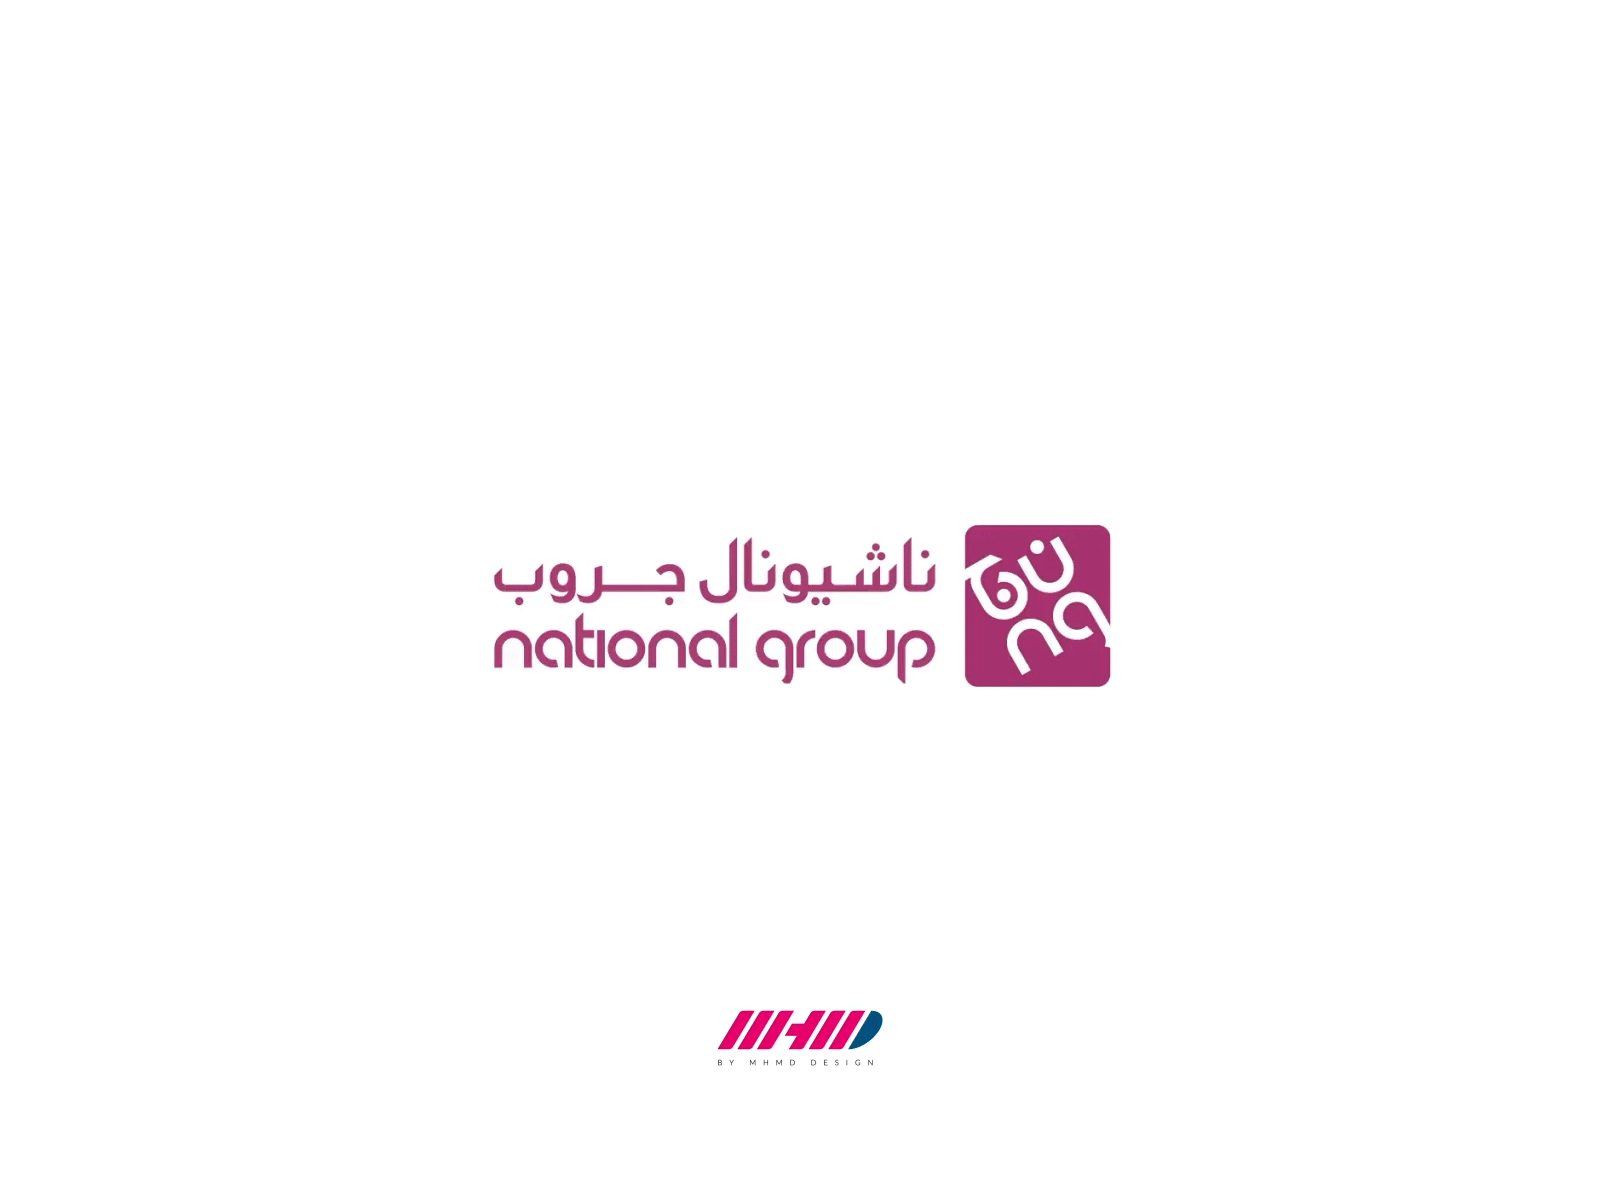 National Group logo animation